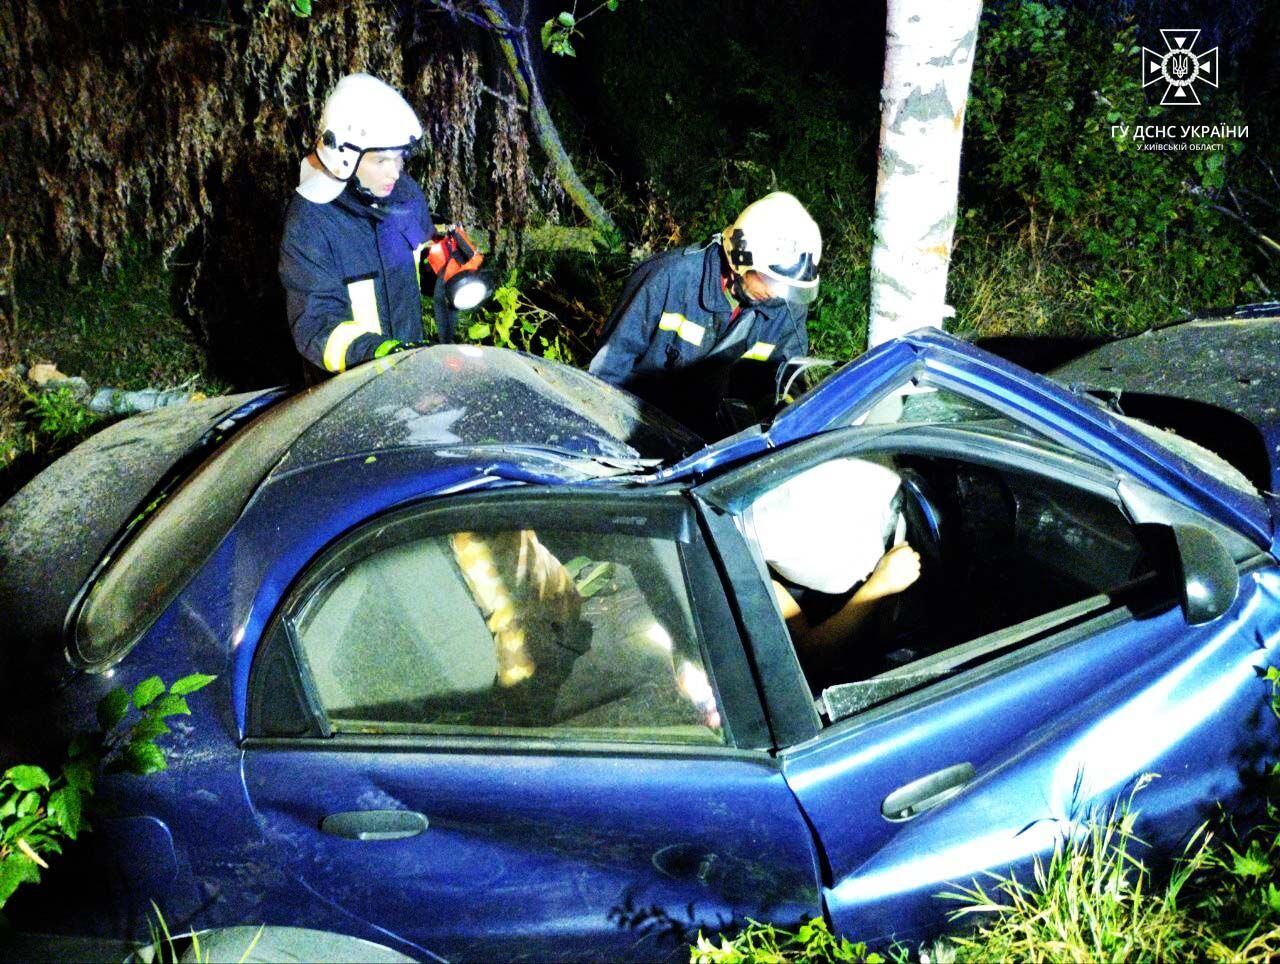 В Борисполе легковушка на скорости съехала в кювет и столкнулась с деревом: водителя из машины доставали спасатели. Фото